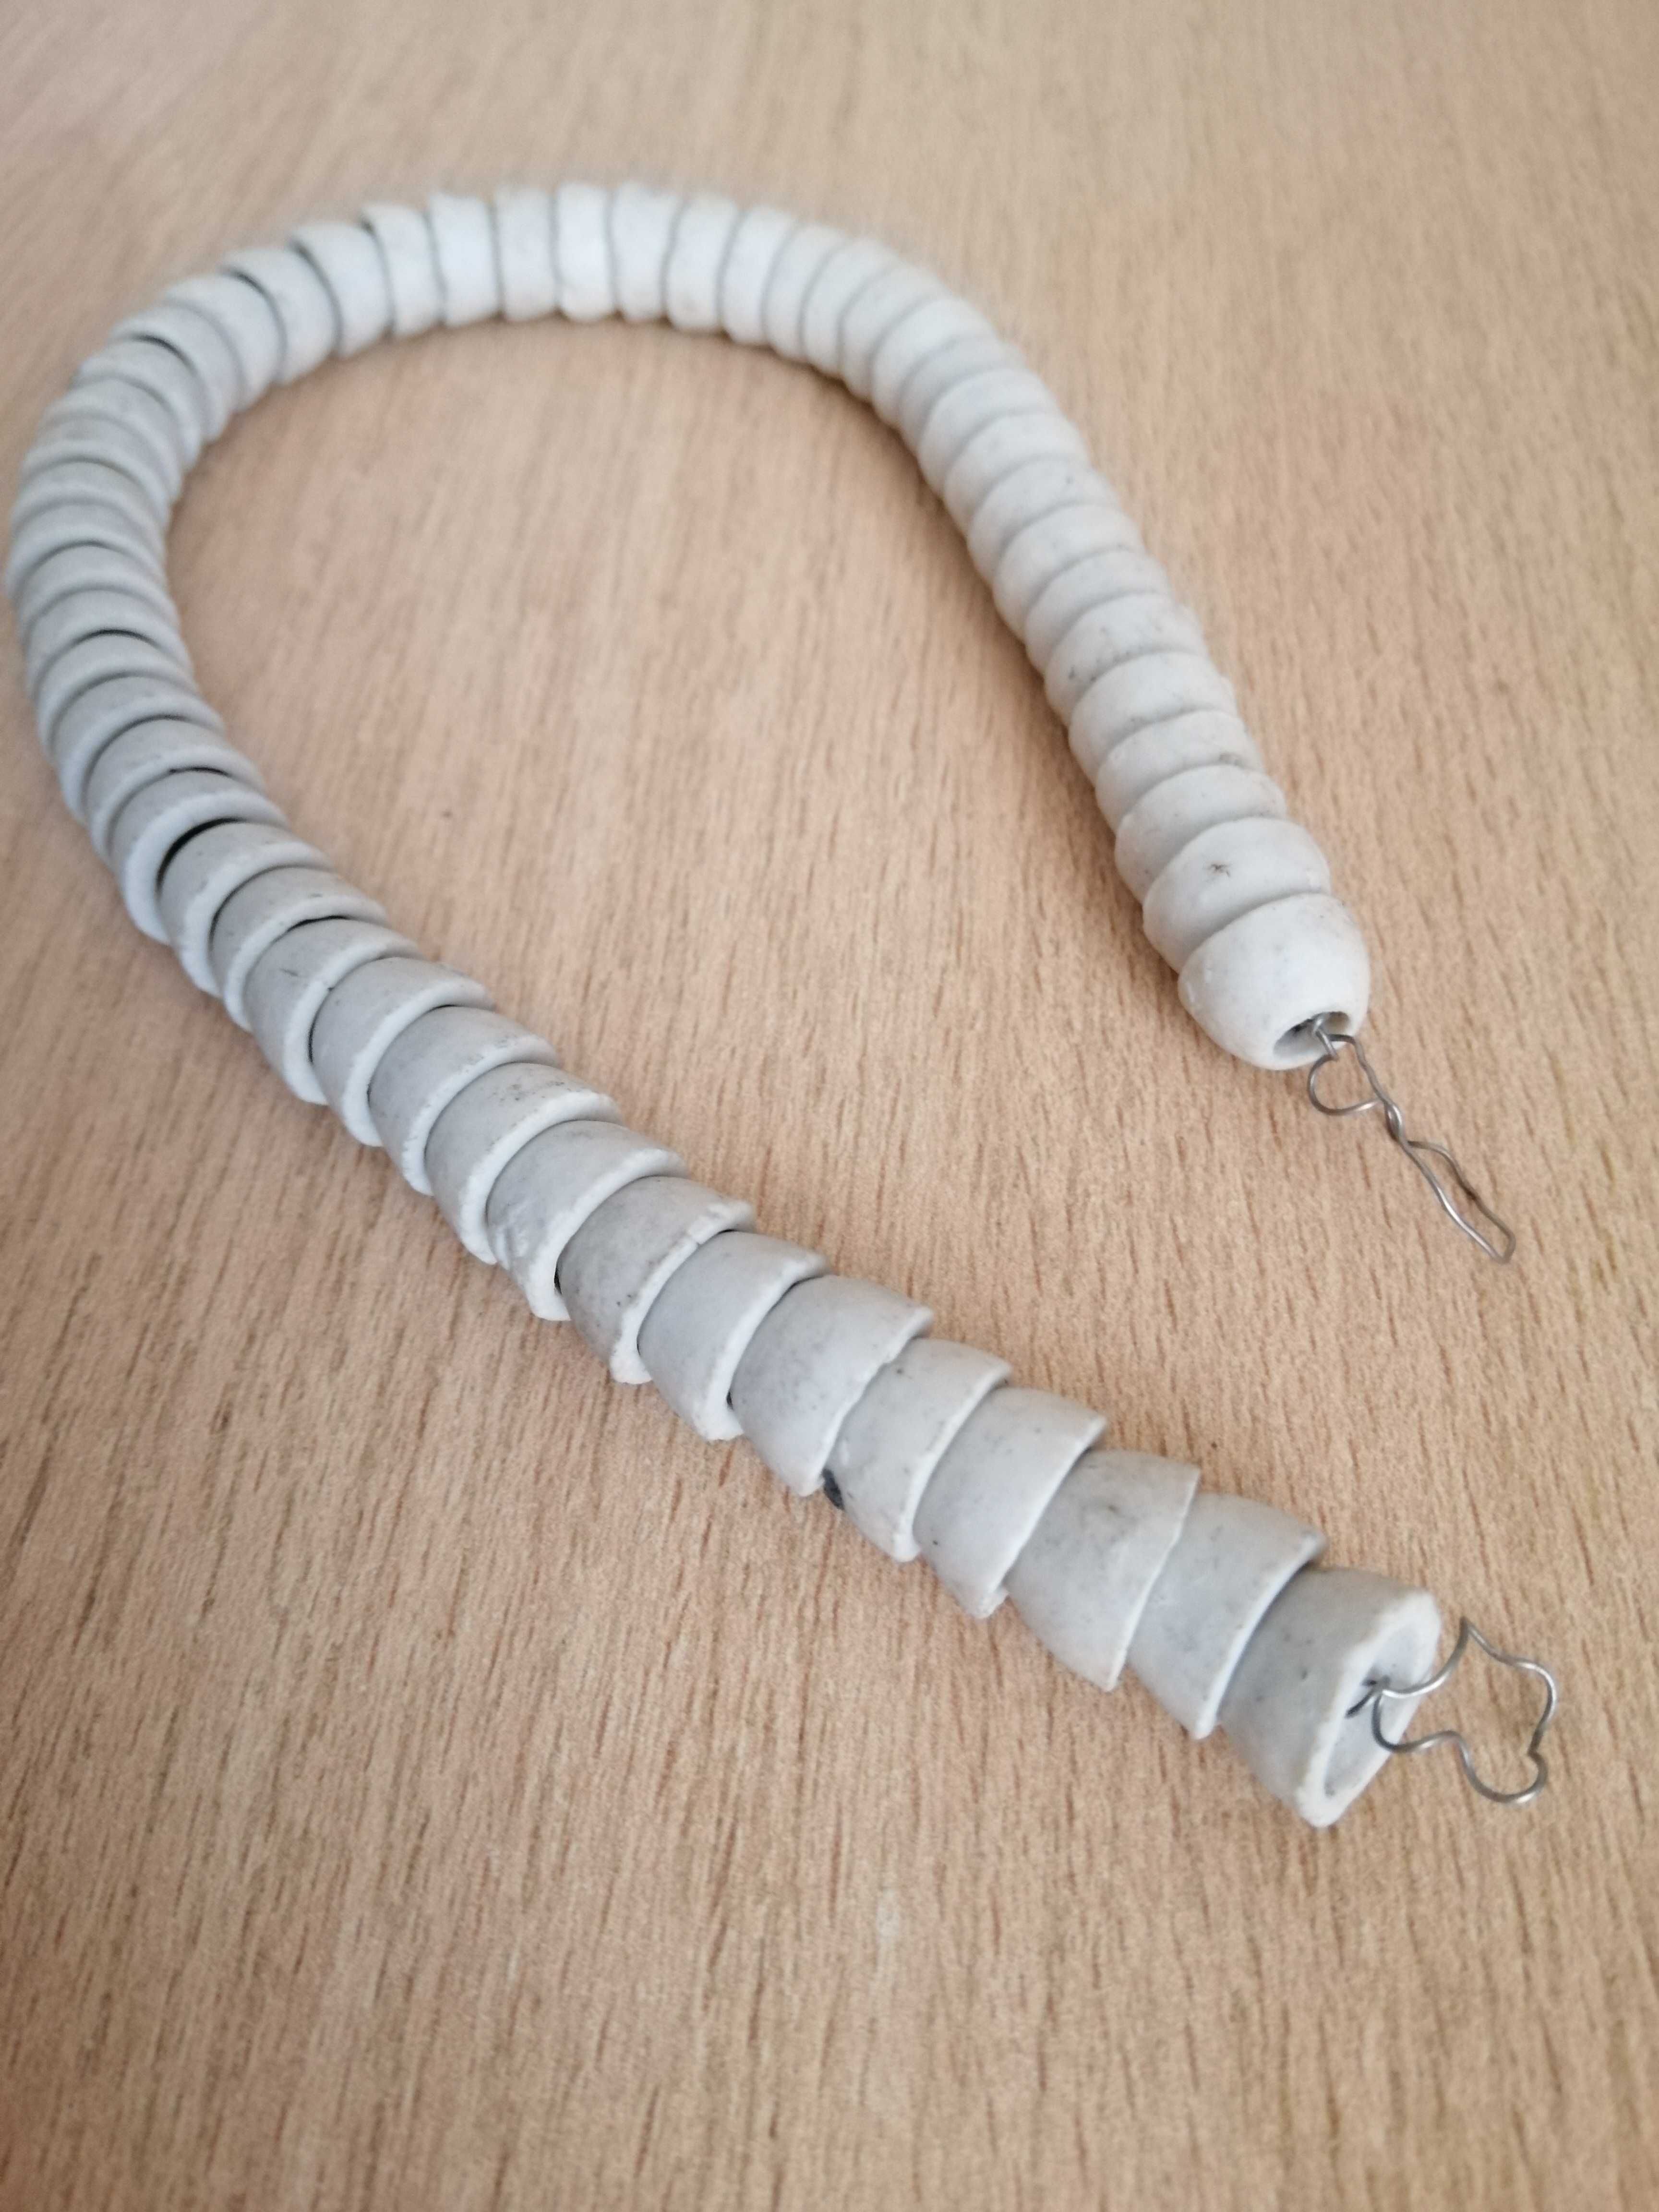 Продам спираль  керамика для утюга и электронагревательных приборов